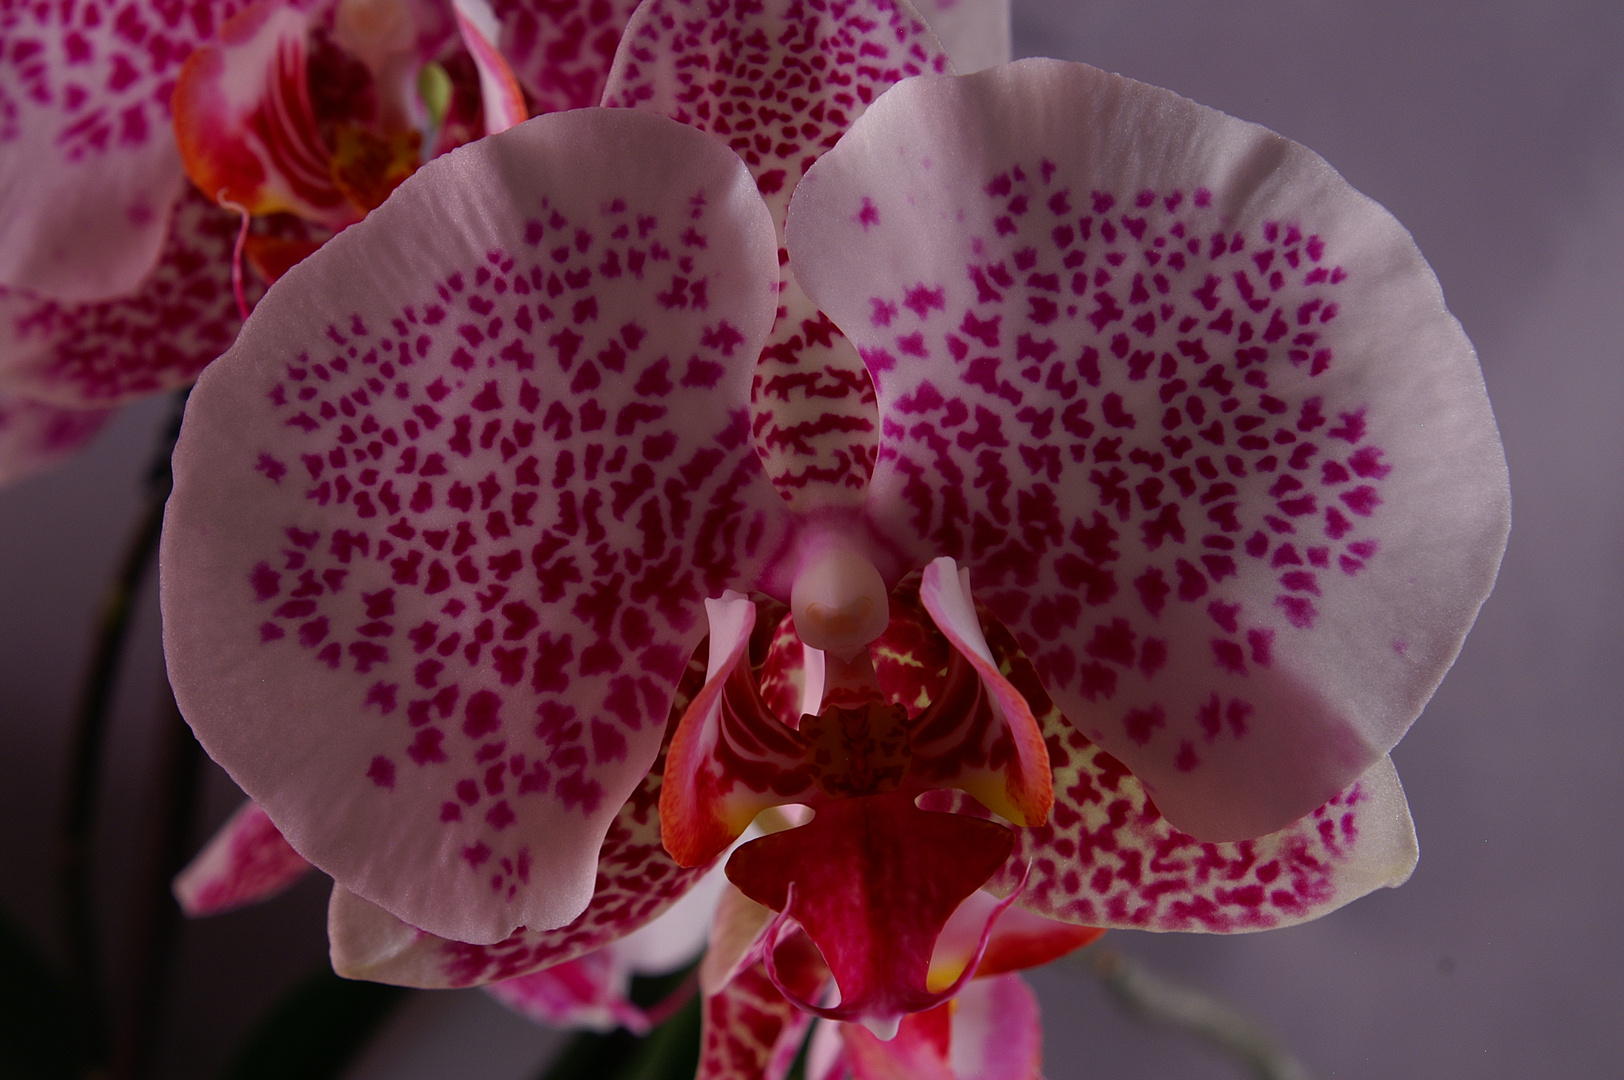 Orchideen 2